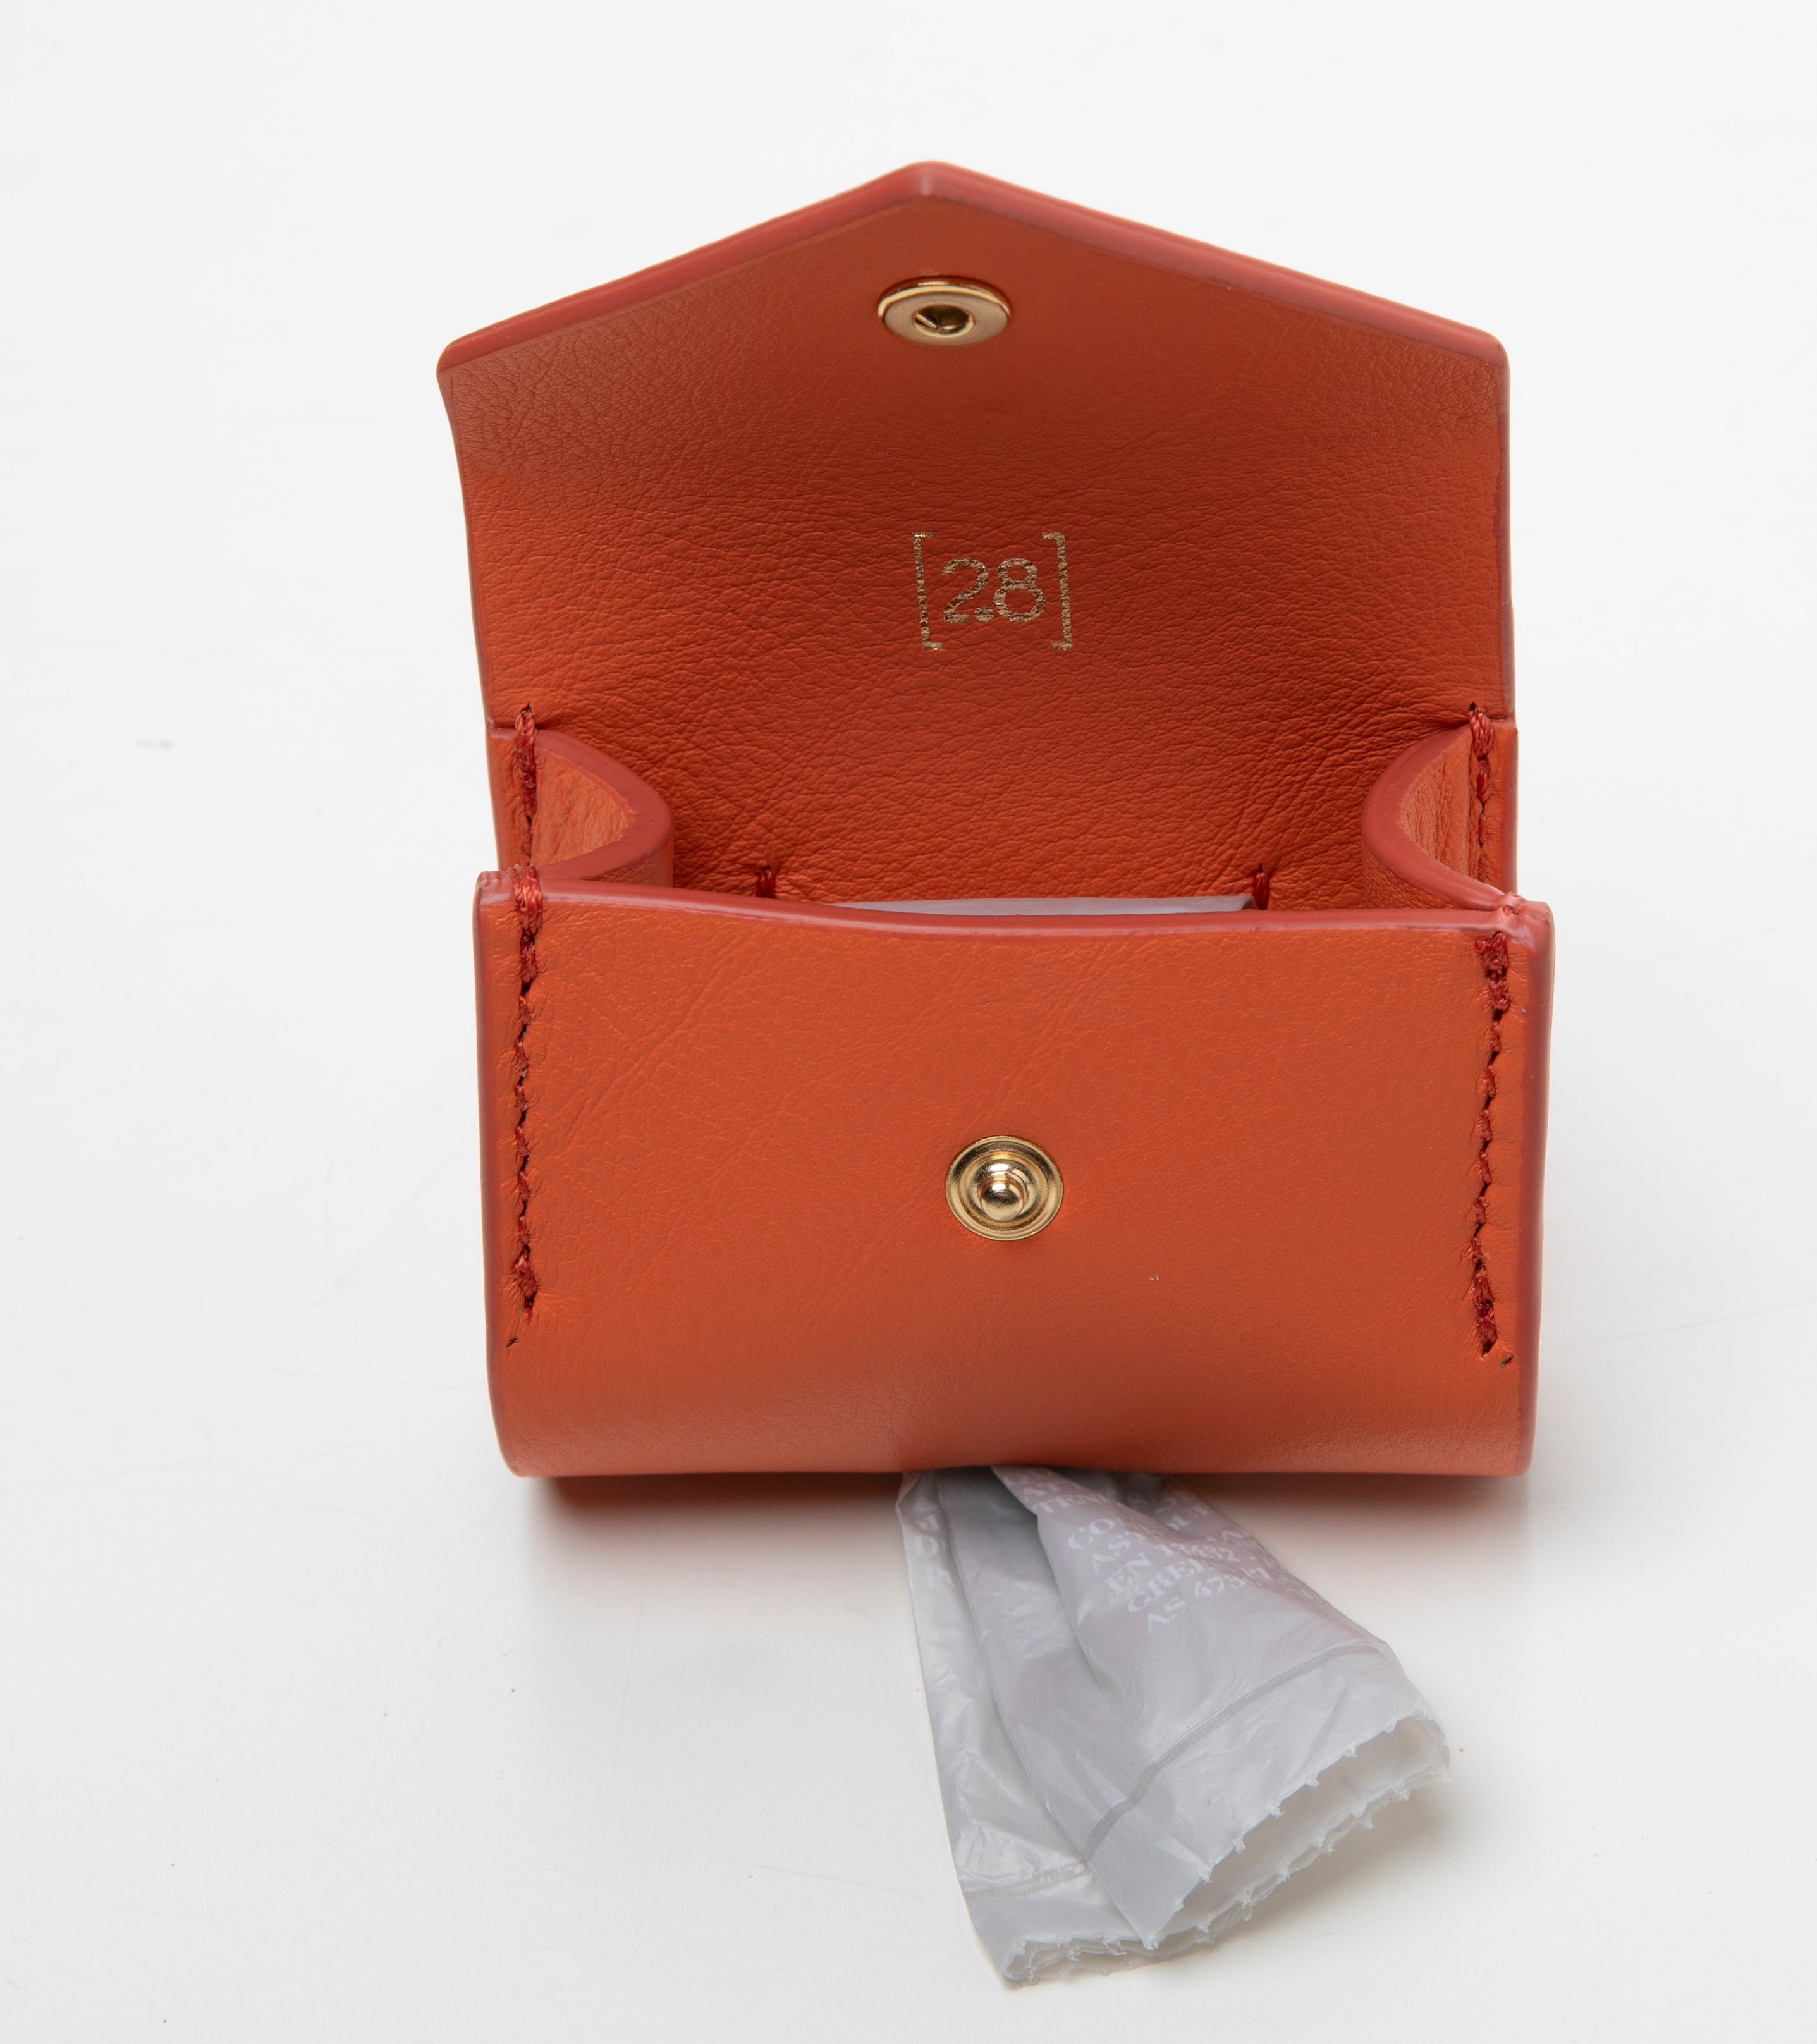 orange-leather-poop-bag-holder5.jpg